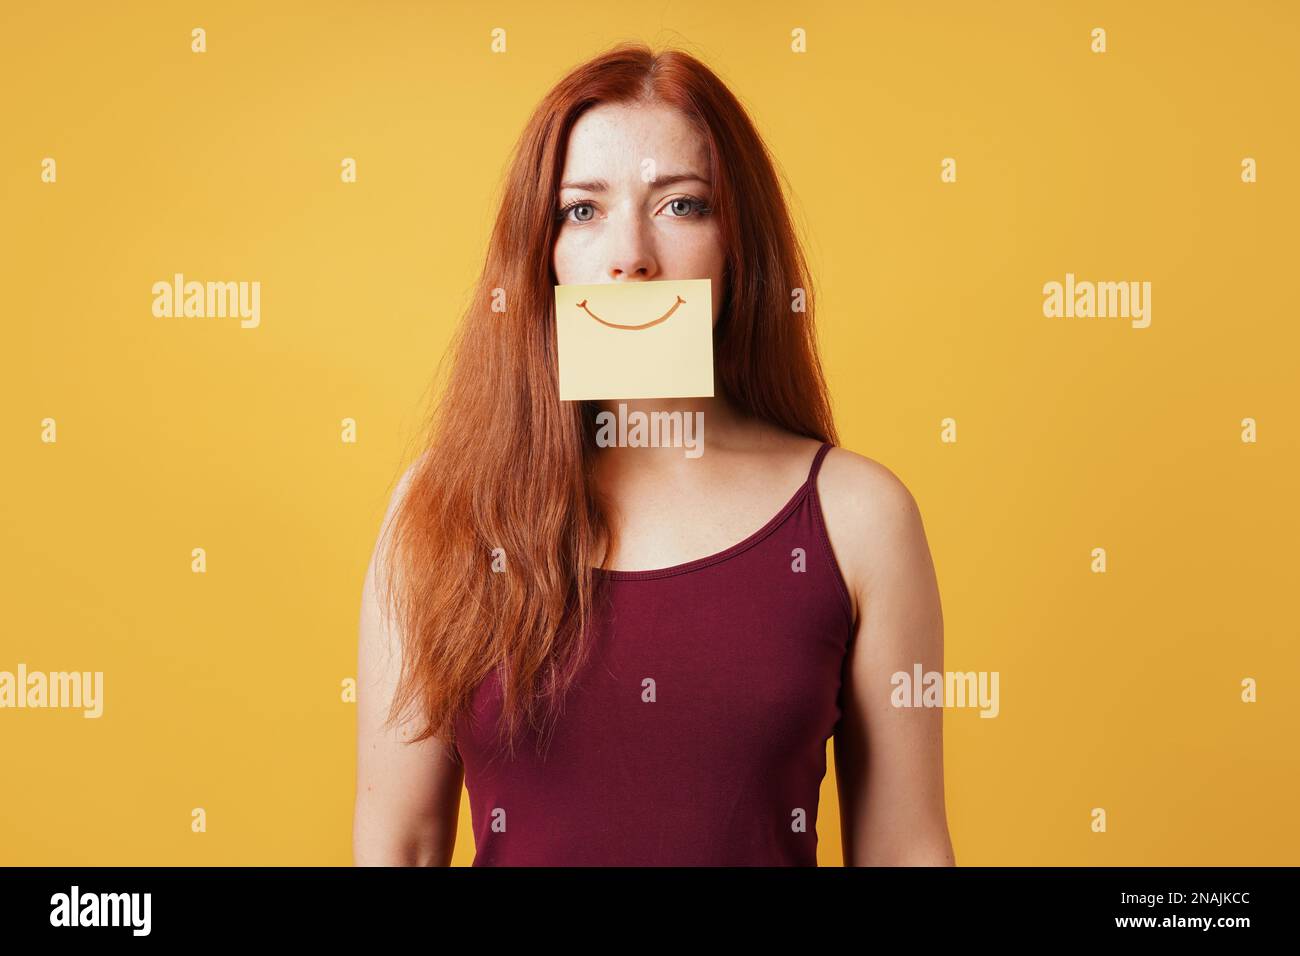 Junge Frau versteckt Traurigkeit oder Depression hinter gefälschten Lächeln gezeichnet Auf gelbem Haftnotizpapier Stockfoto